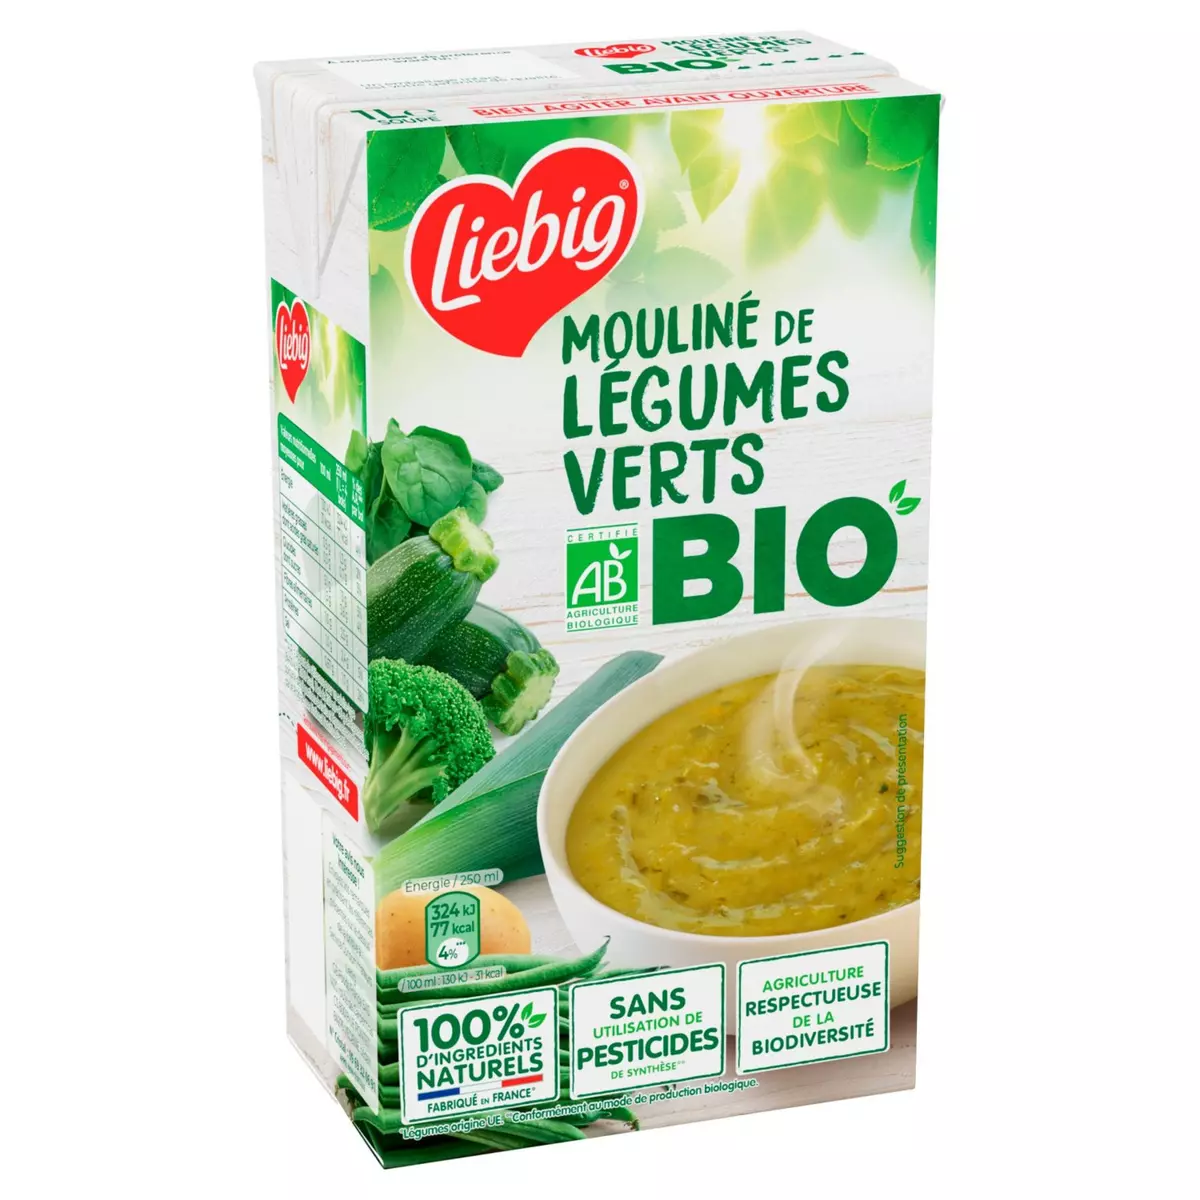 Liebig soupe mouliné de 5 légumes verts2 x30cl. 30 cl